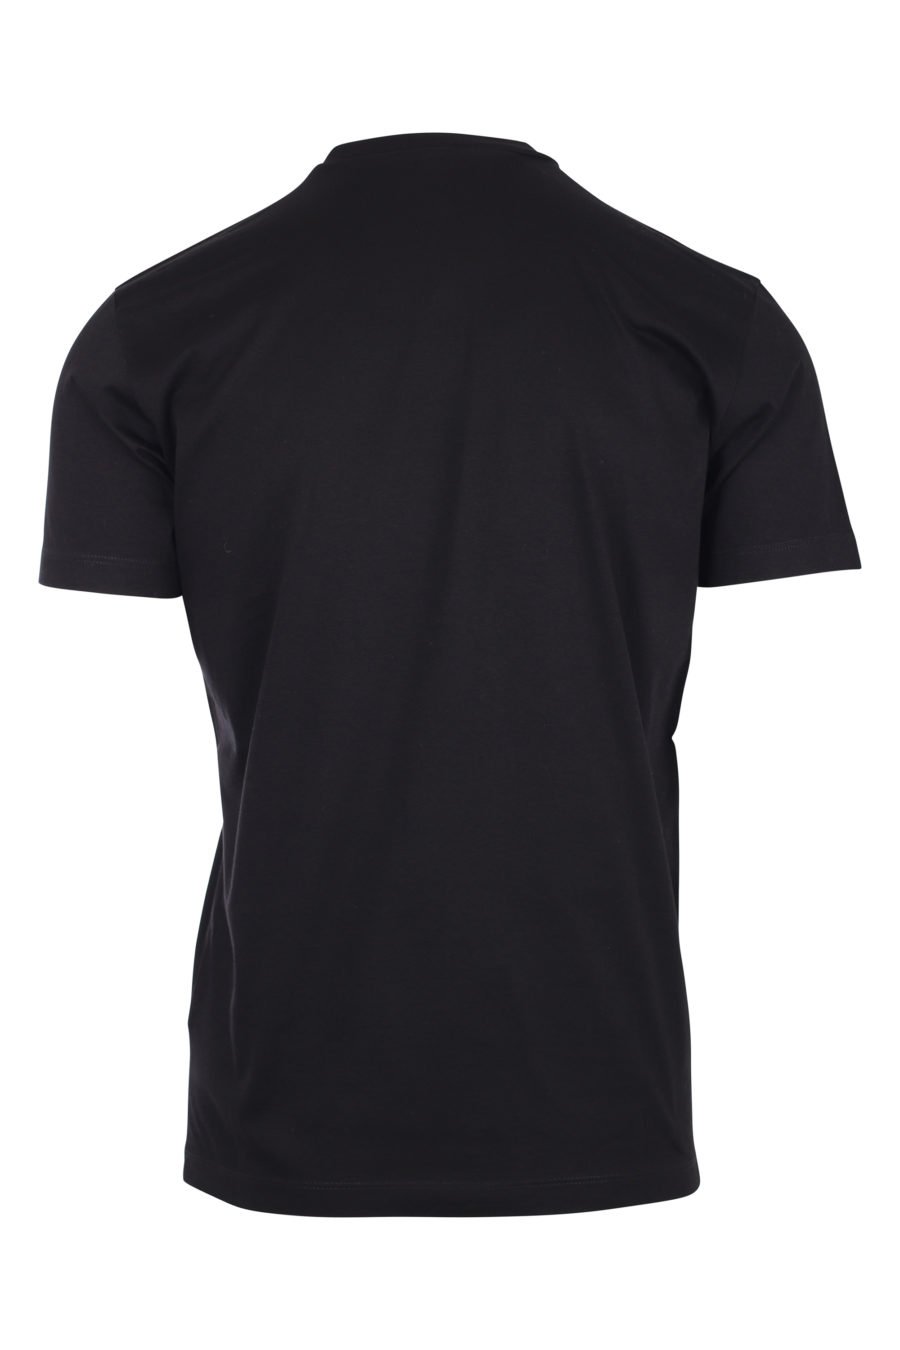 T-shirt preta com o logótipo "icon" - IMG 9790